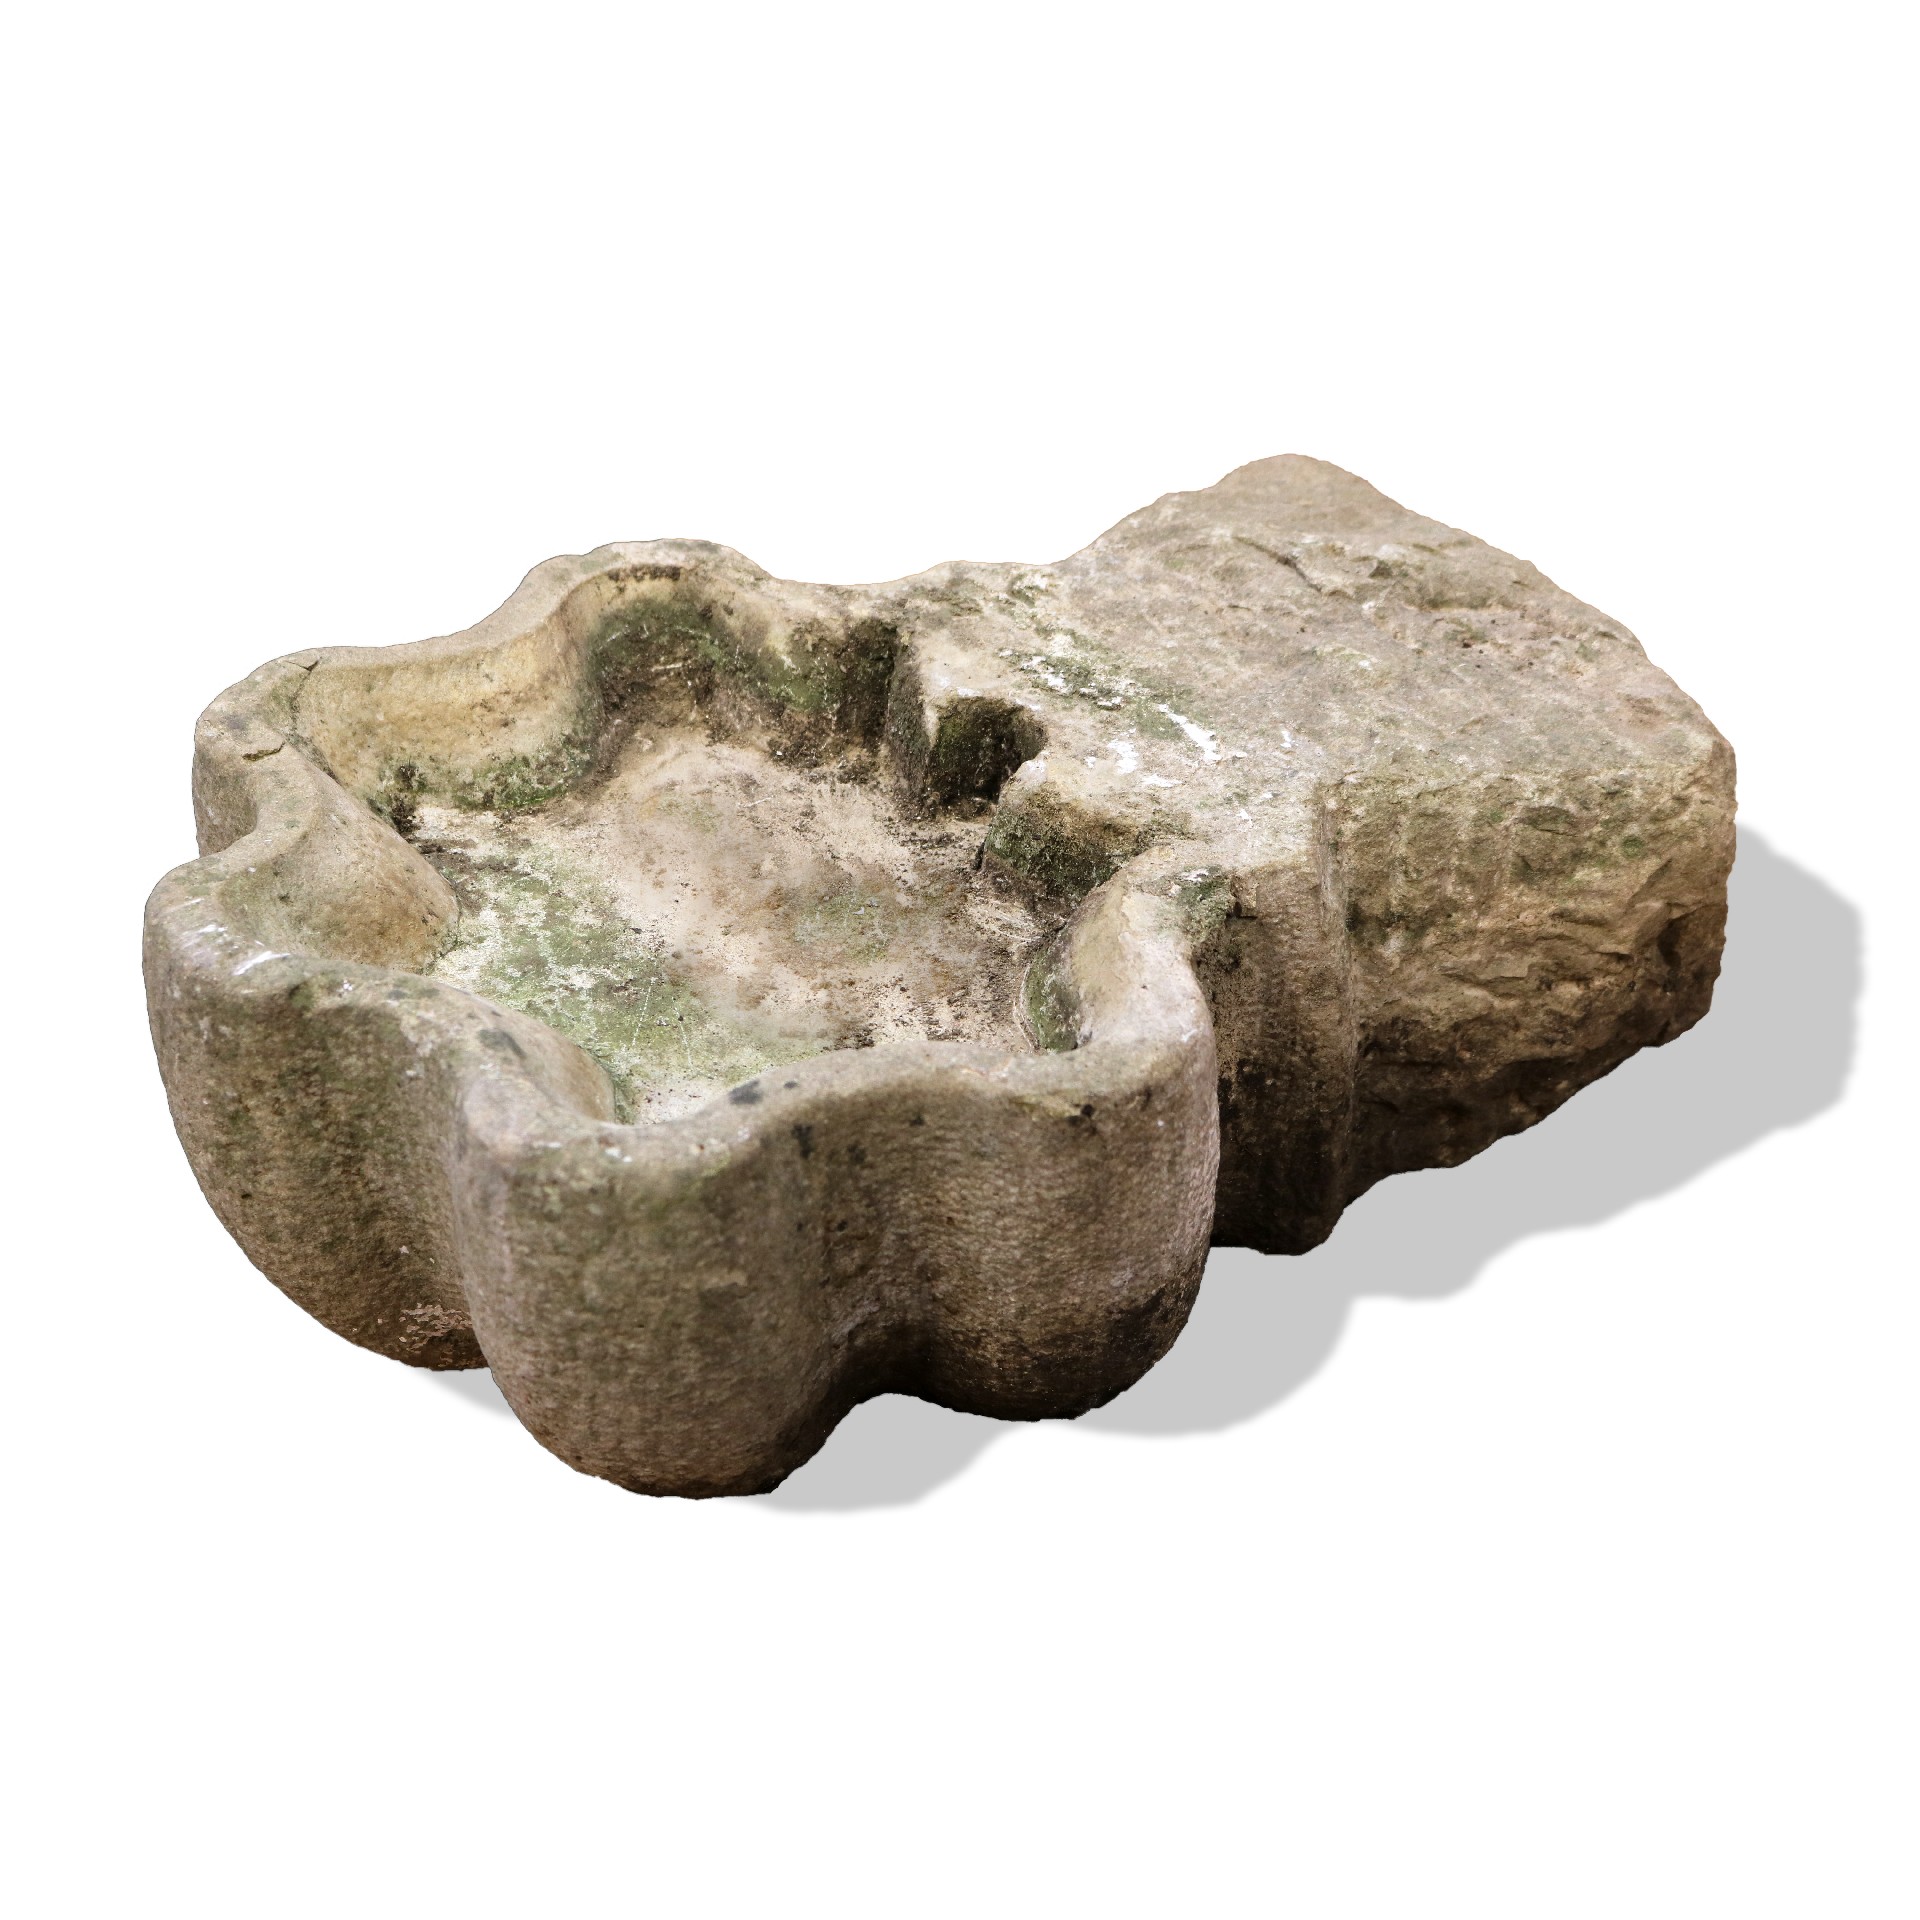 Antica vasca in pietra. - Fontane Antiche - Arredo Giardino - Prodotti - Antichità Fiorillo